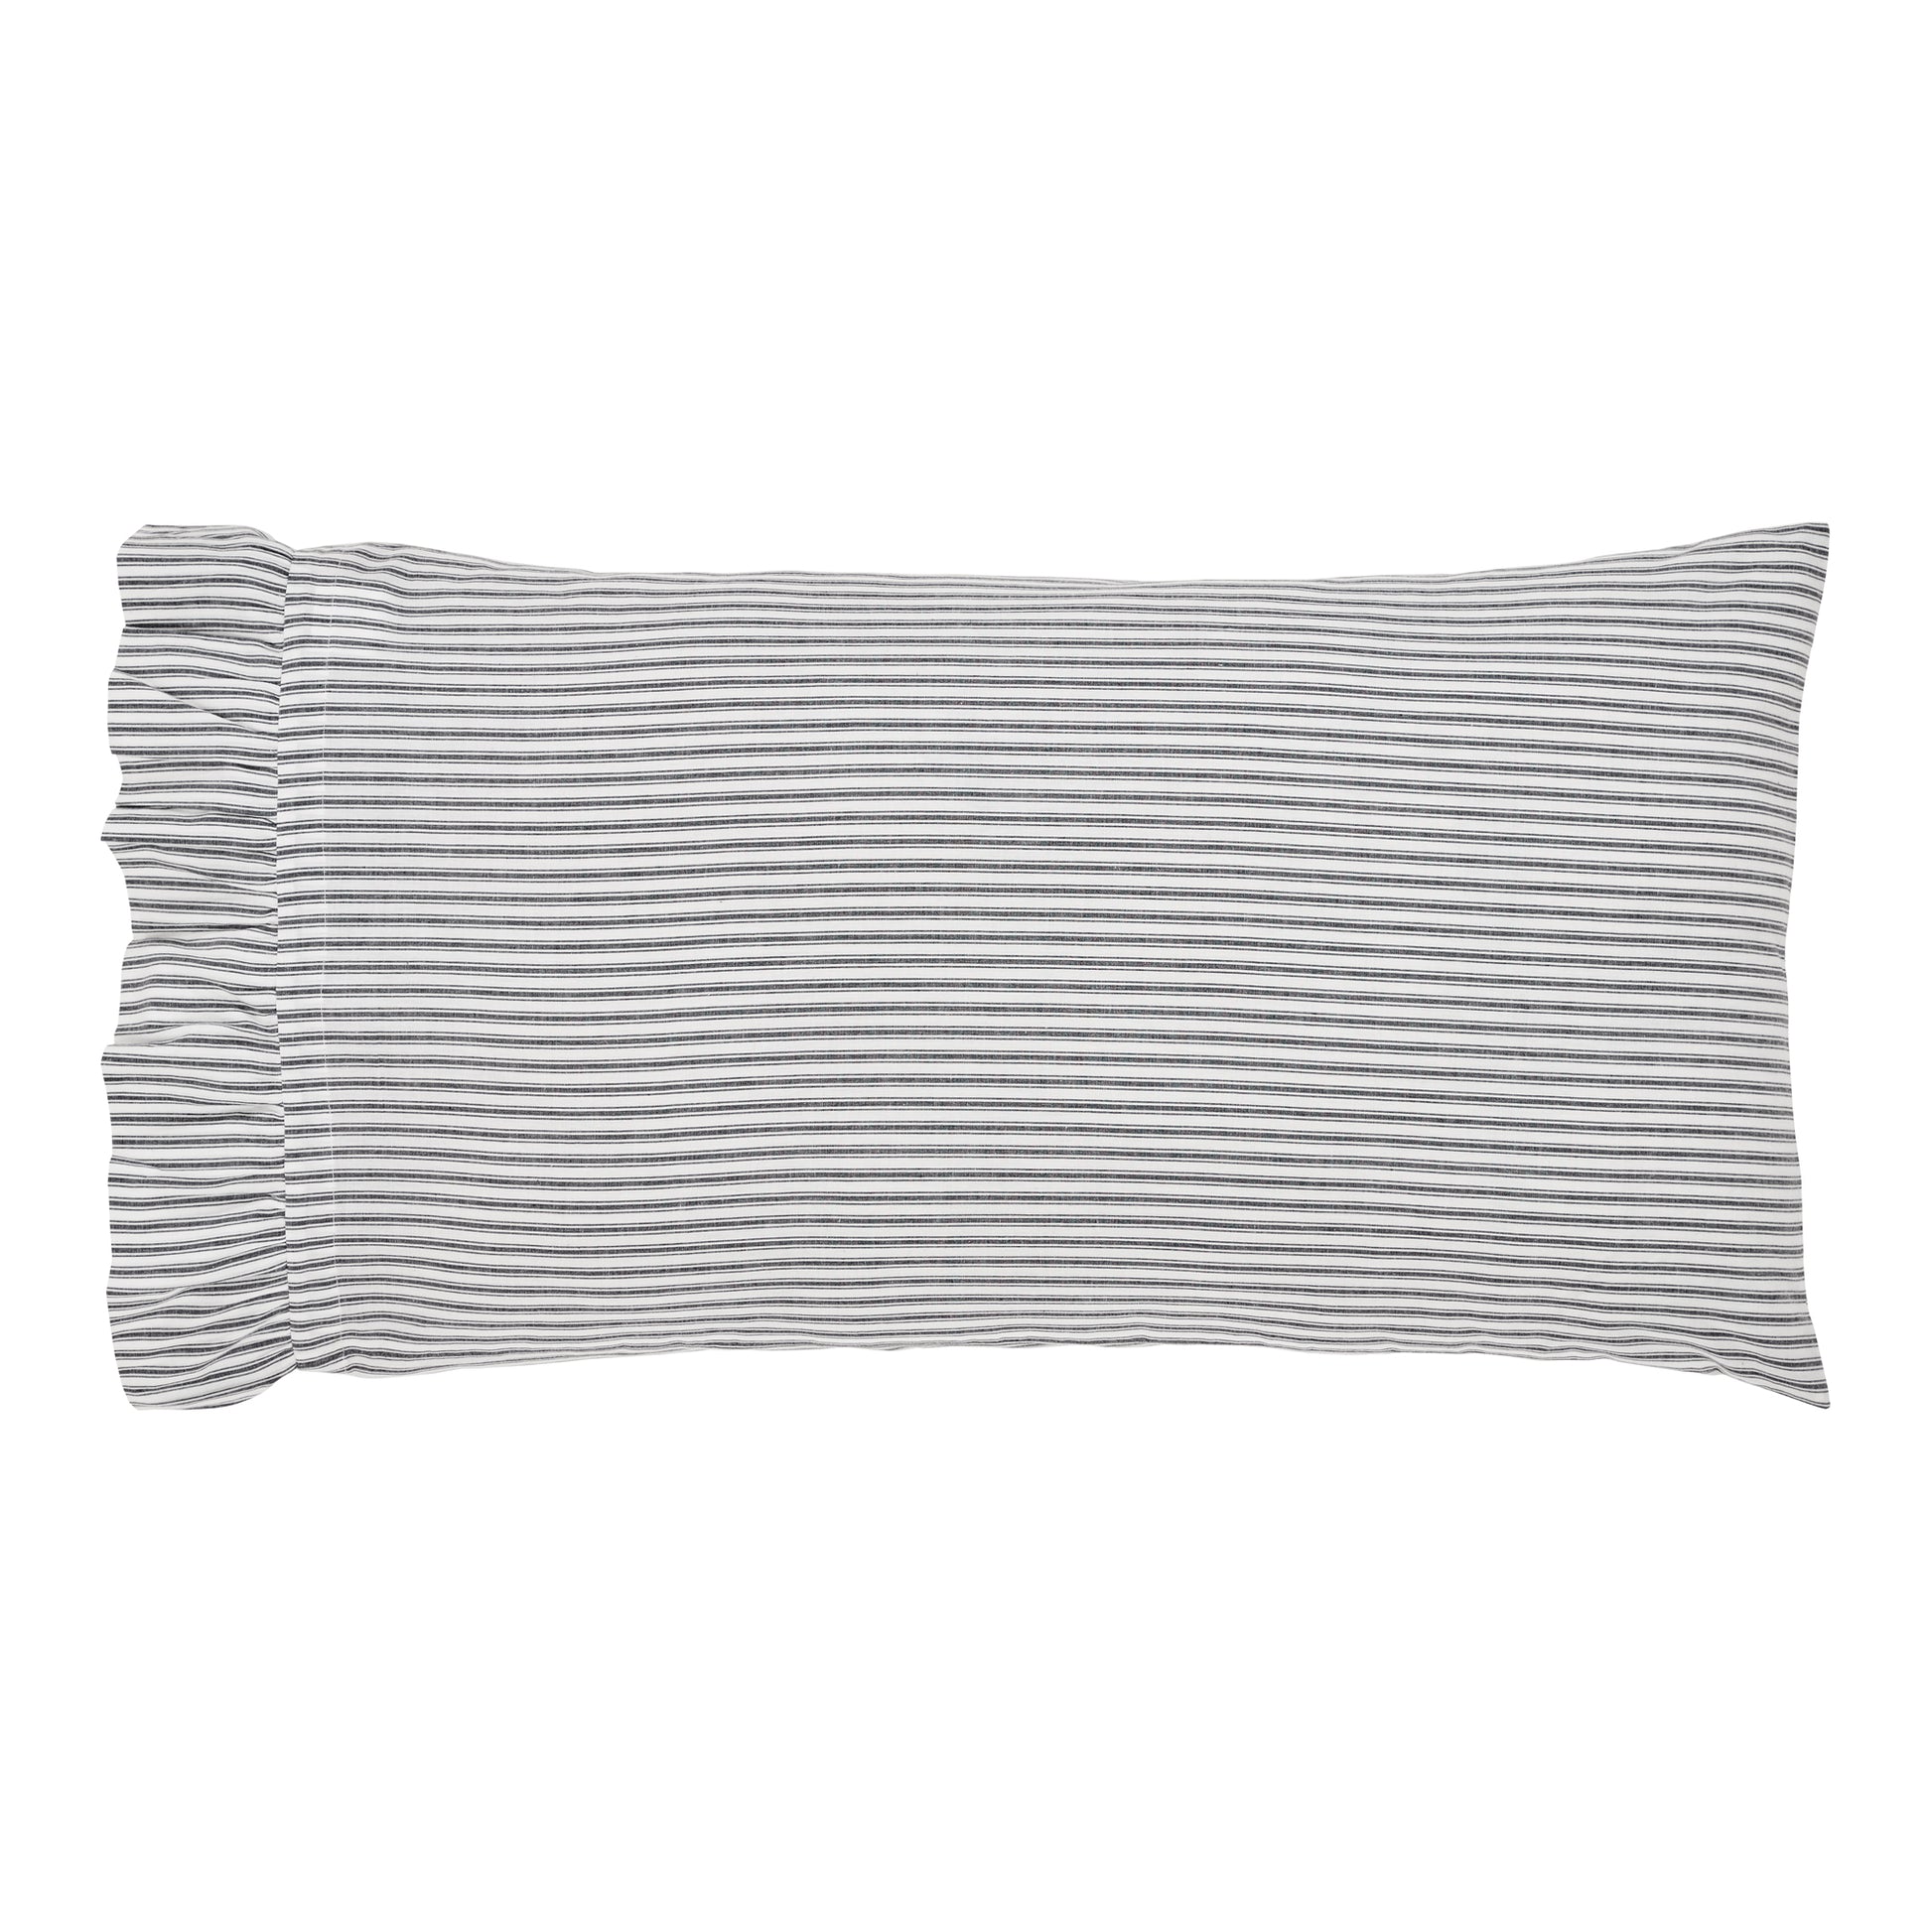 80457-Sawyer-Mill-Black-Ruffled-Ticking-Stripe-King-Pillow-Case-Set-of-2-21x36-4-image-3